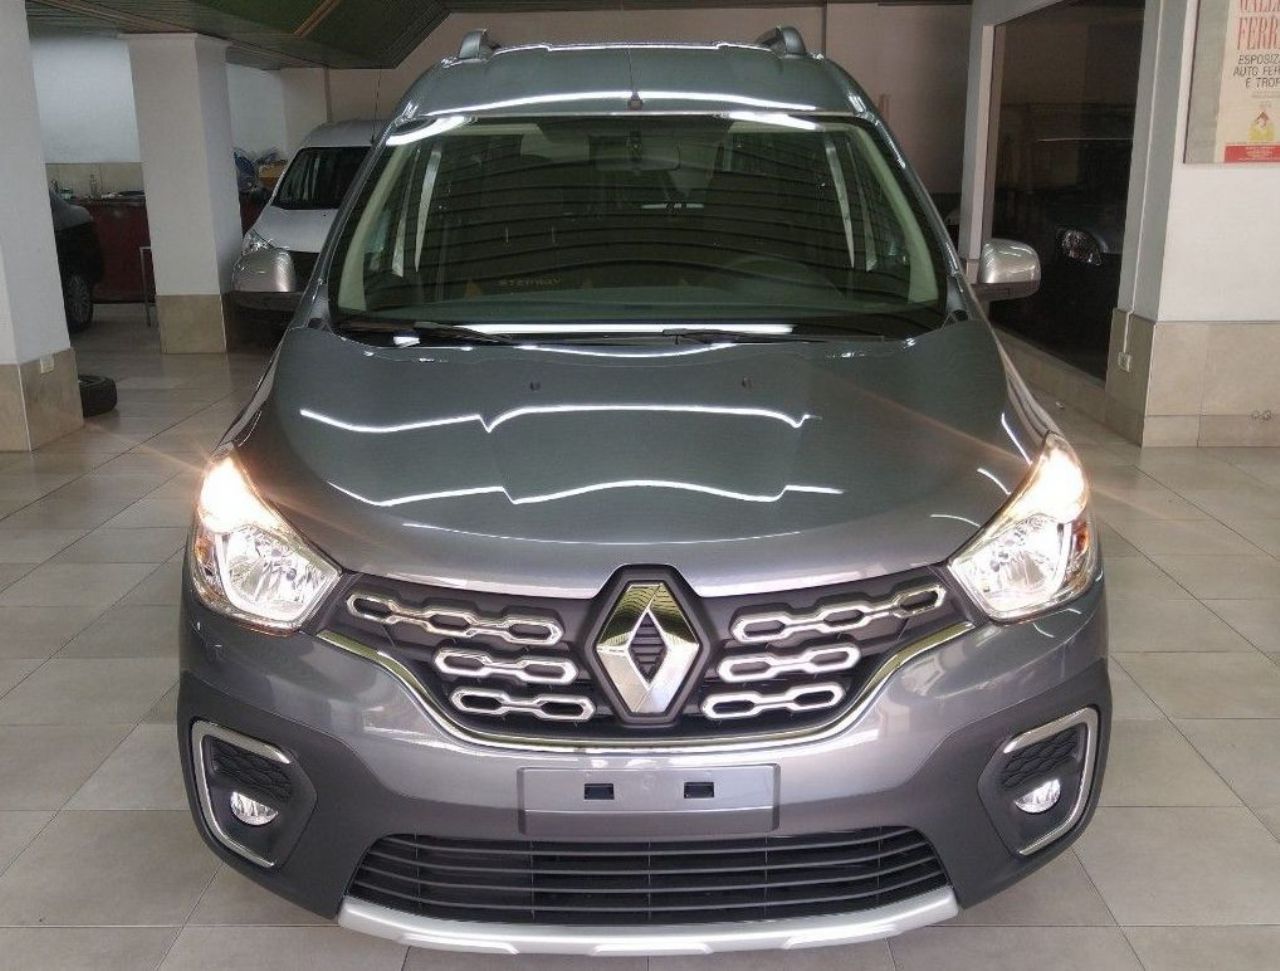 Renault Kangoo Nueva en Mendoza, deRuedas